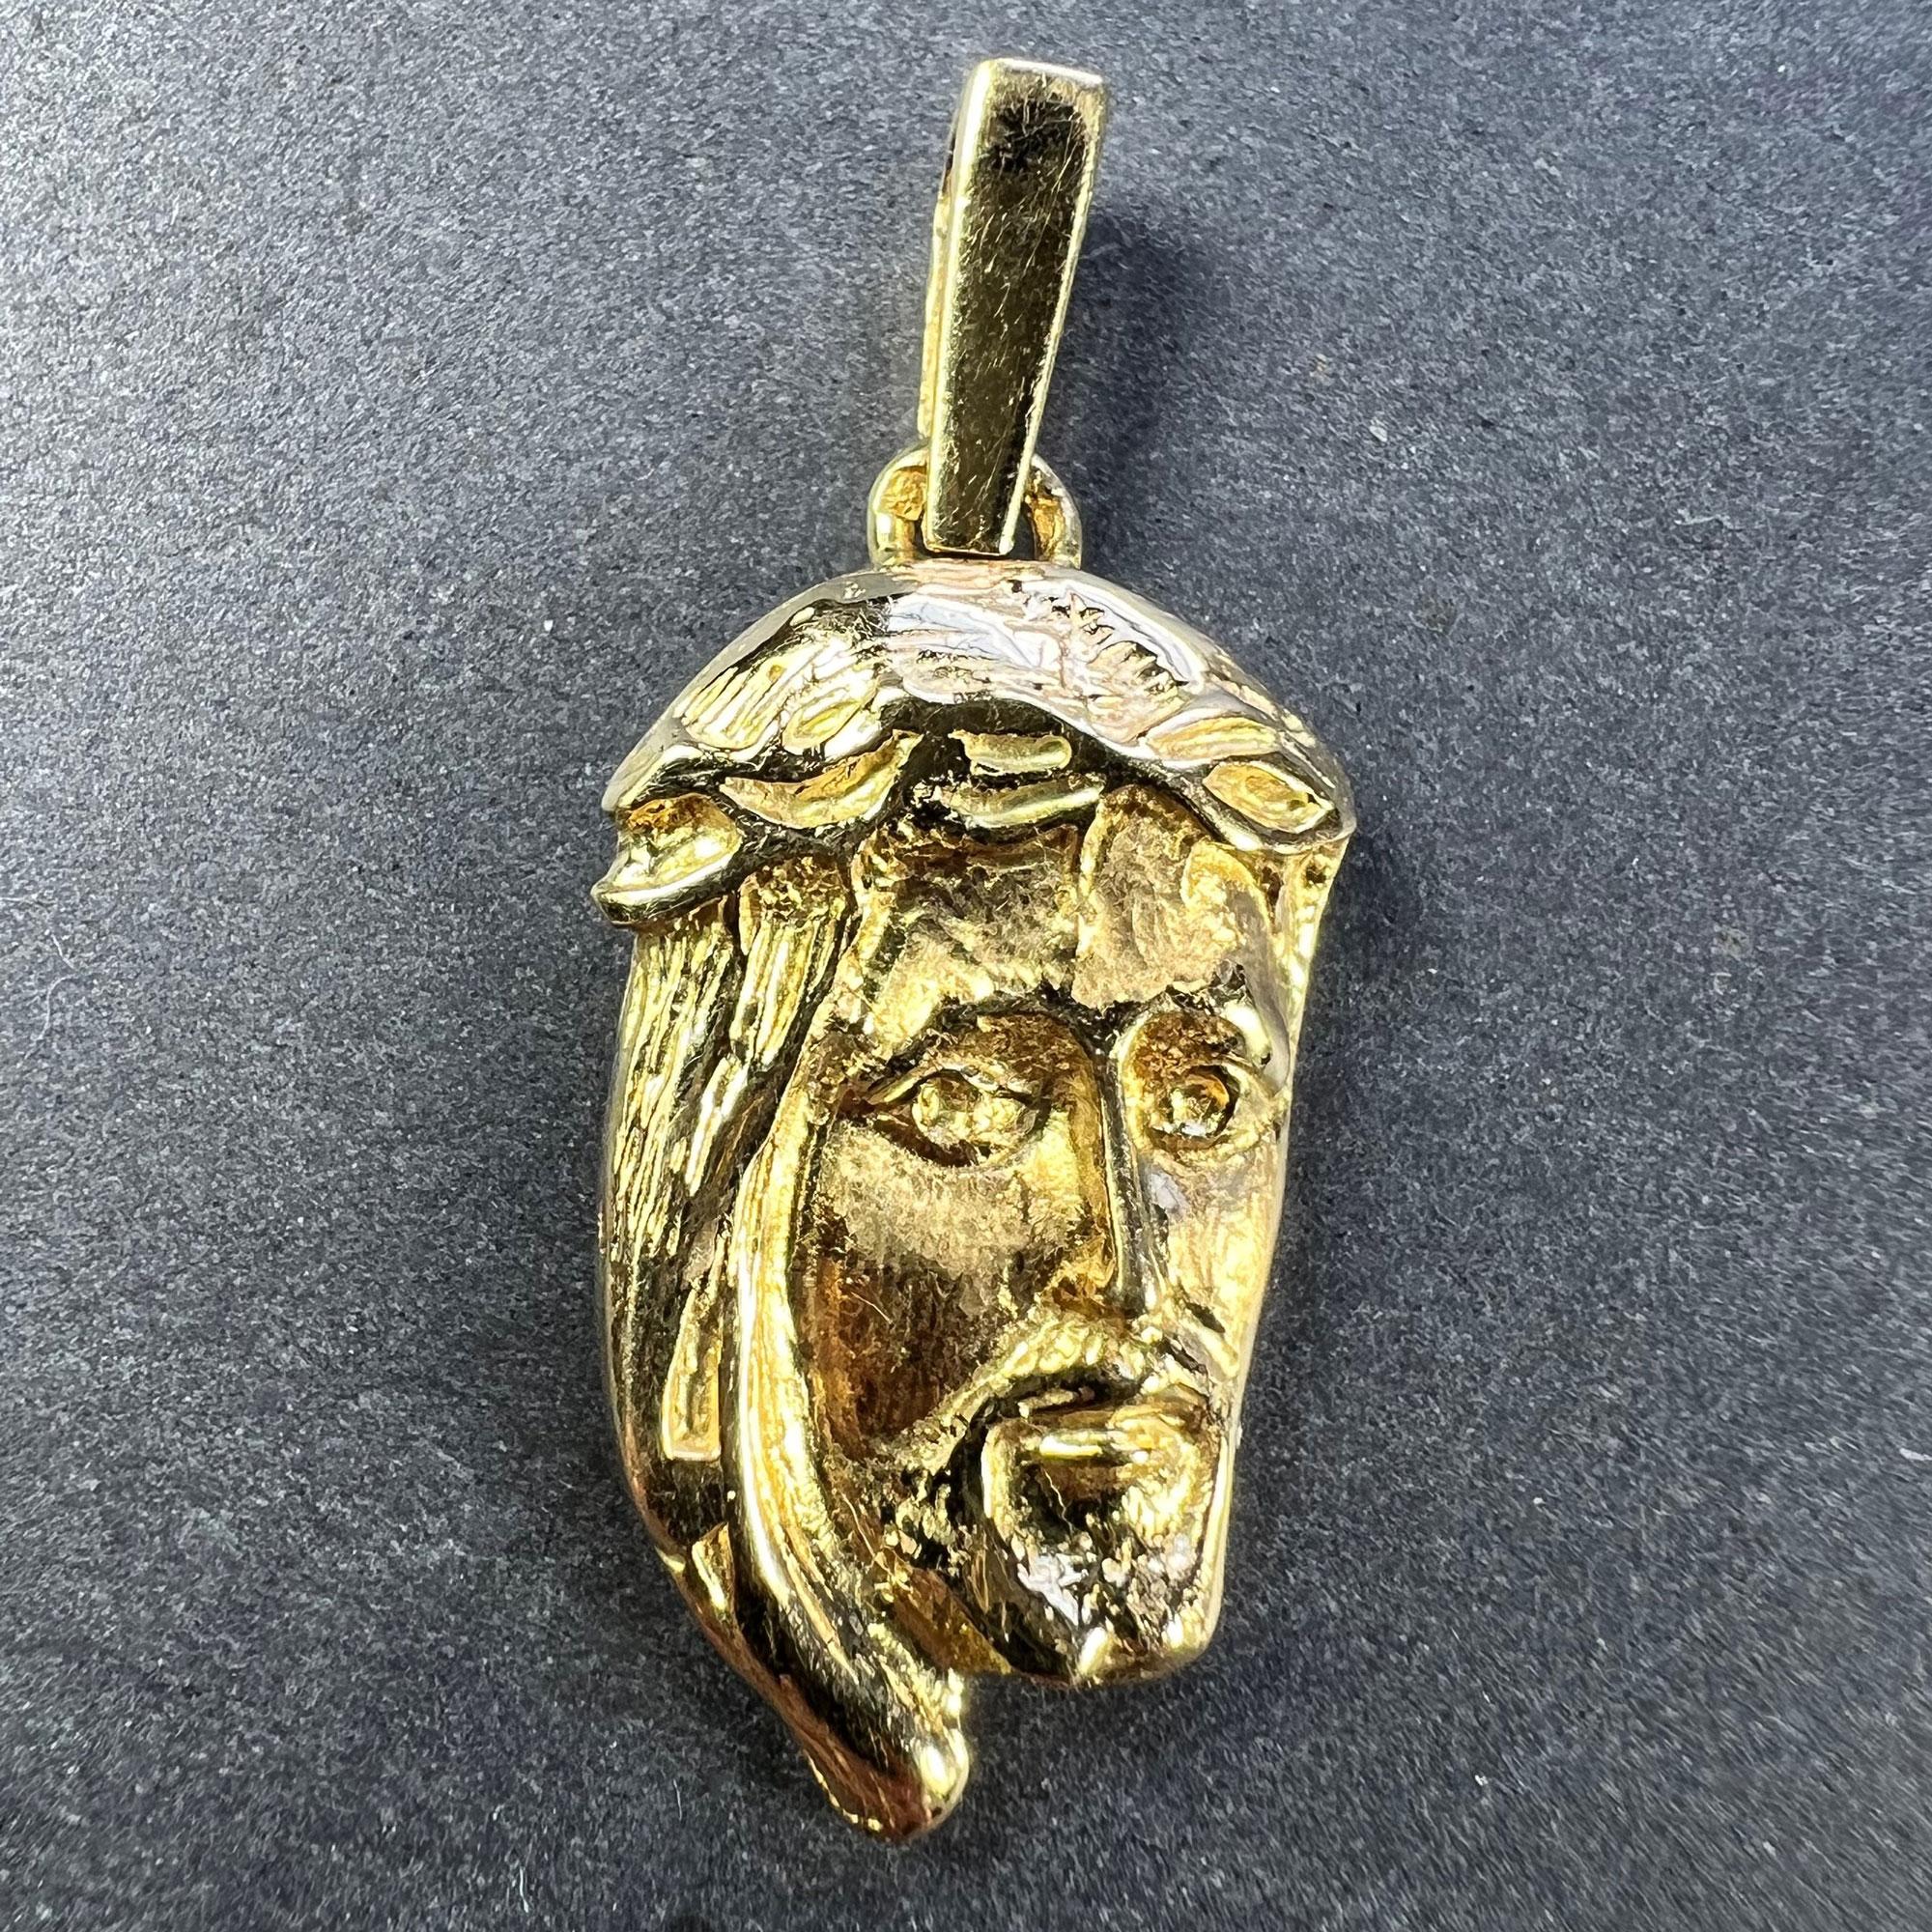 Pendentif à breloques en or jaune 18 carats (18K) conçu comme un profil sculptural de trois-quarts de Jésus-Christ portant la couronne d'épines. Testé pour l'or 18 carats et estampillé d'une marque de fabricant inconnue.

Dimensions : 2,6 x 1,5 x